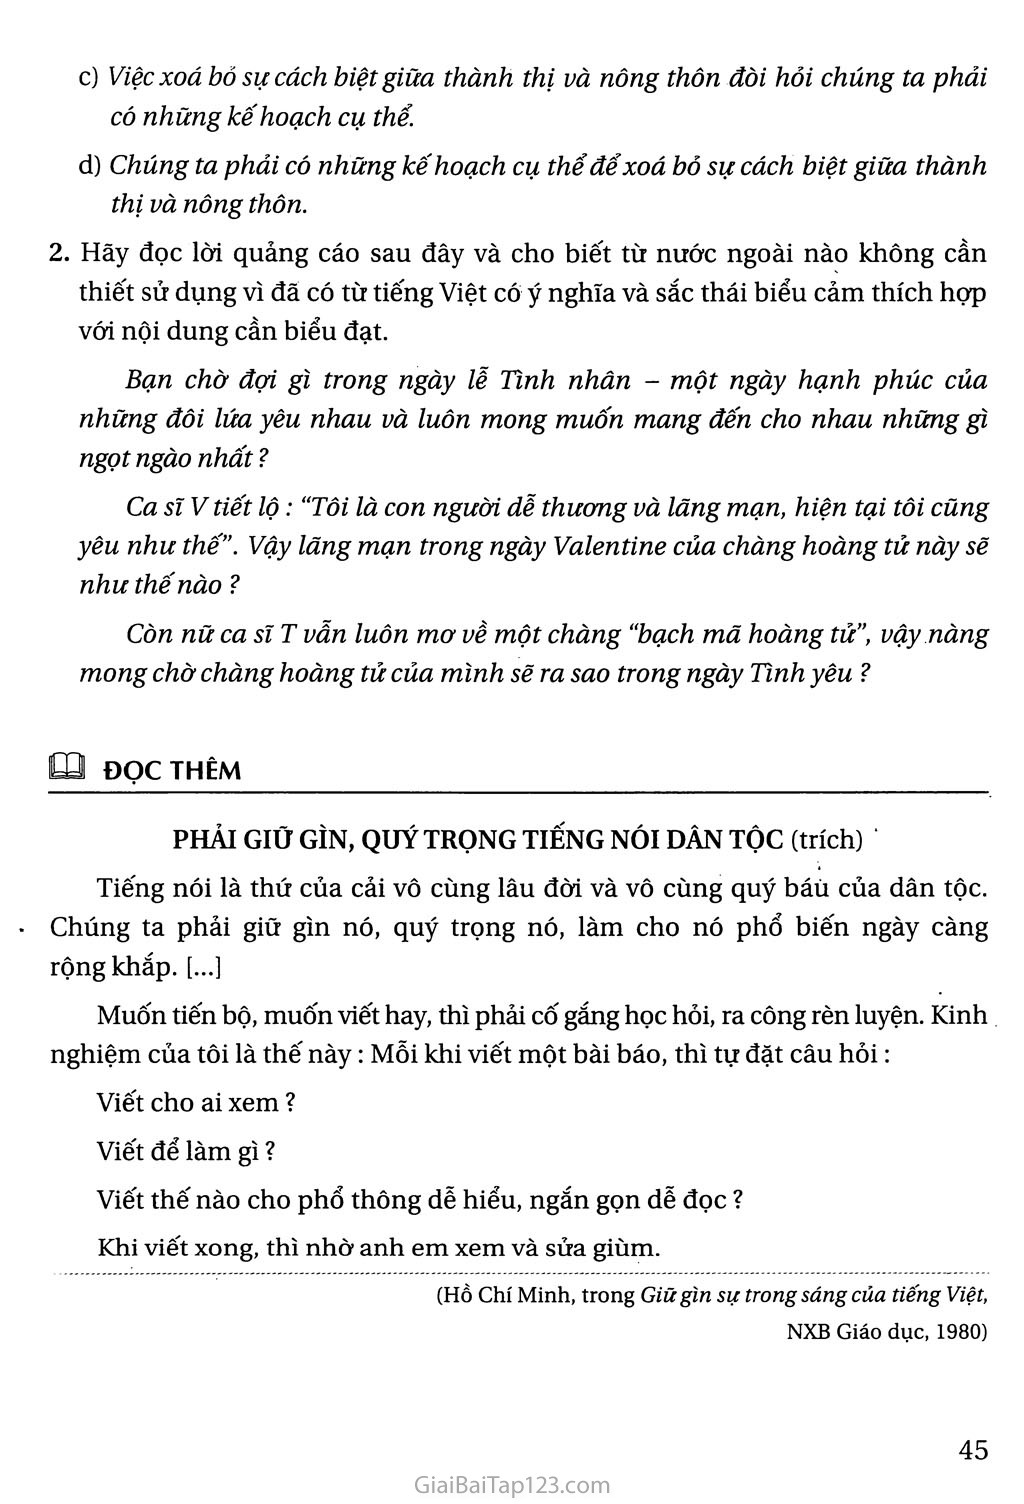 Giữ gìn sự trong sáng của Tiếng Việt (tiếp theo) trang 3